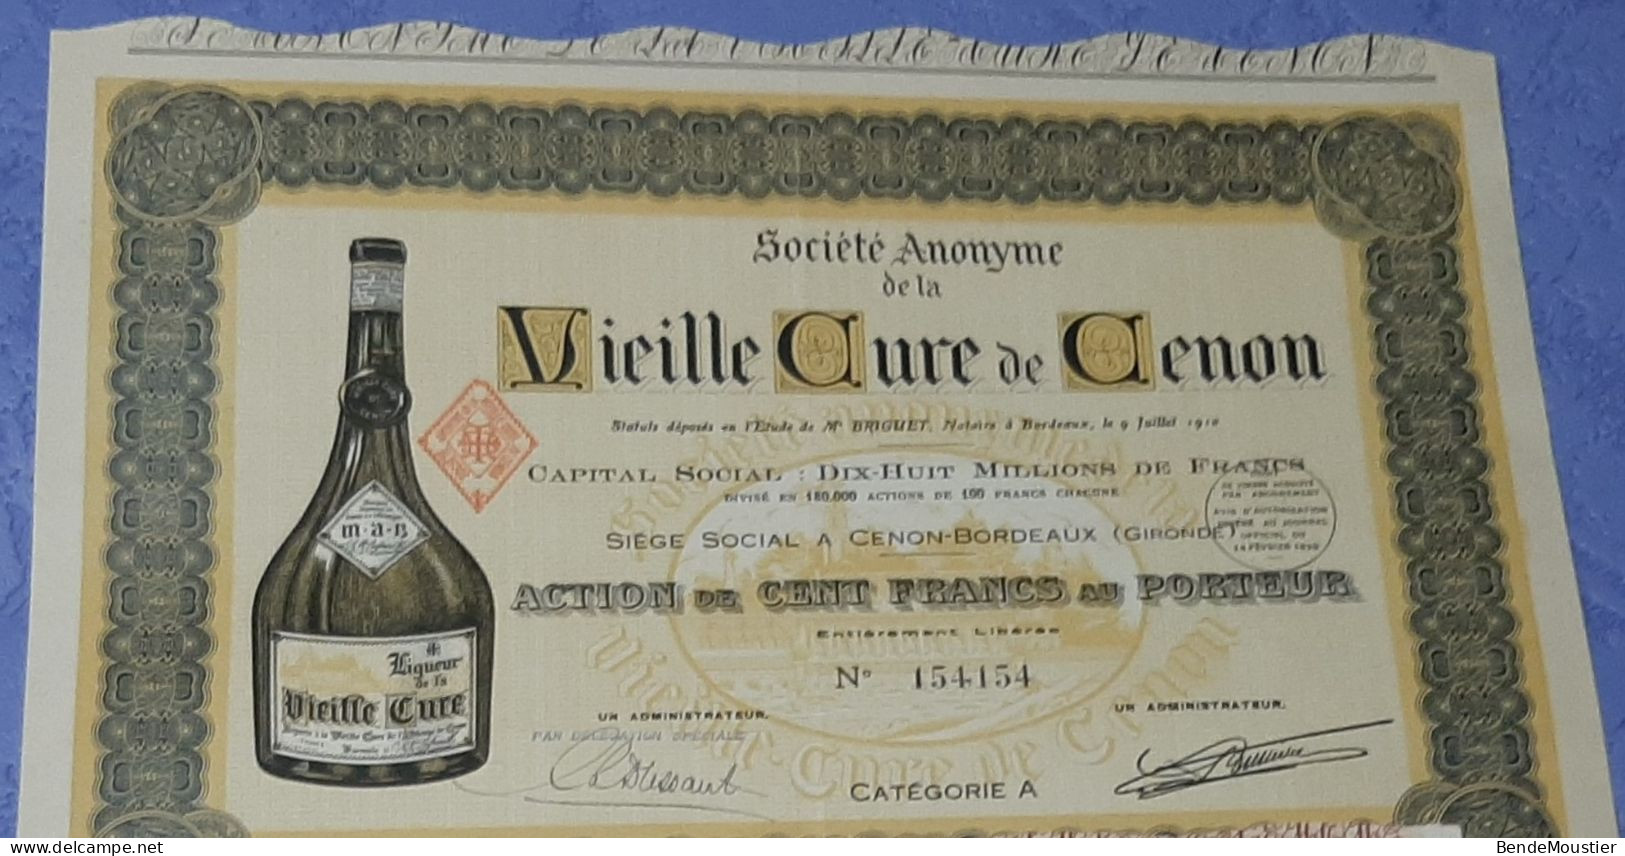 Vieille Cure De Cenon - Action De 2500 Frs - Action De 100 Frs Au Porteur - Cenon-Bordeaux - Gironde 1910 & 1952. - Landwirtschaft